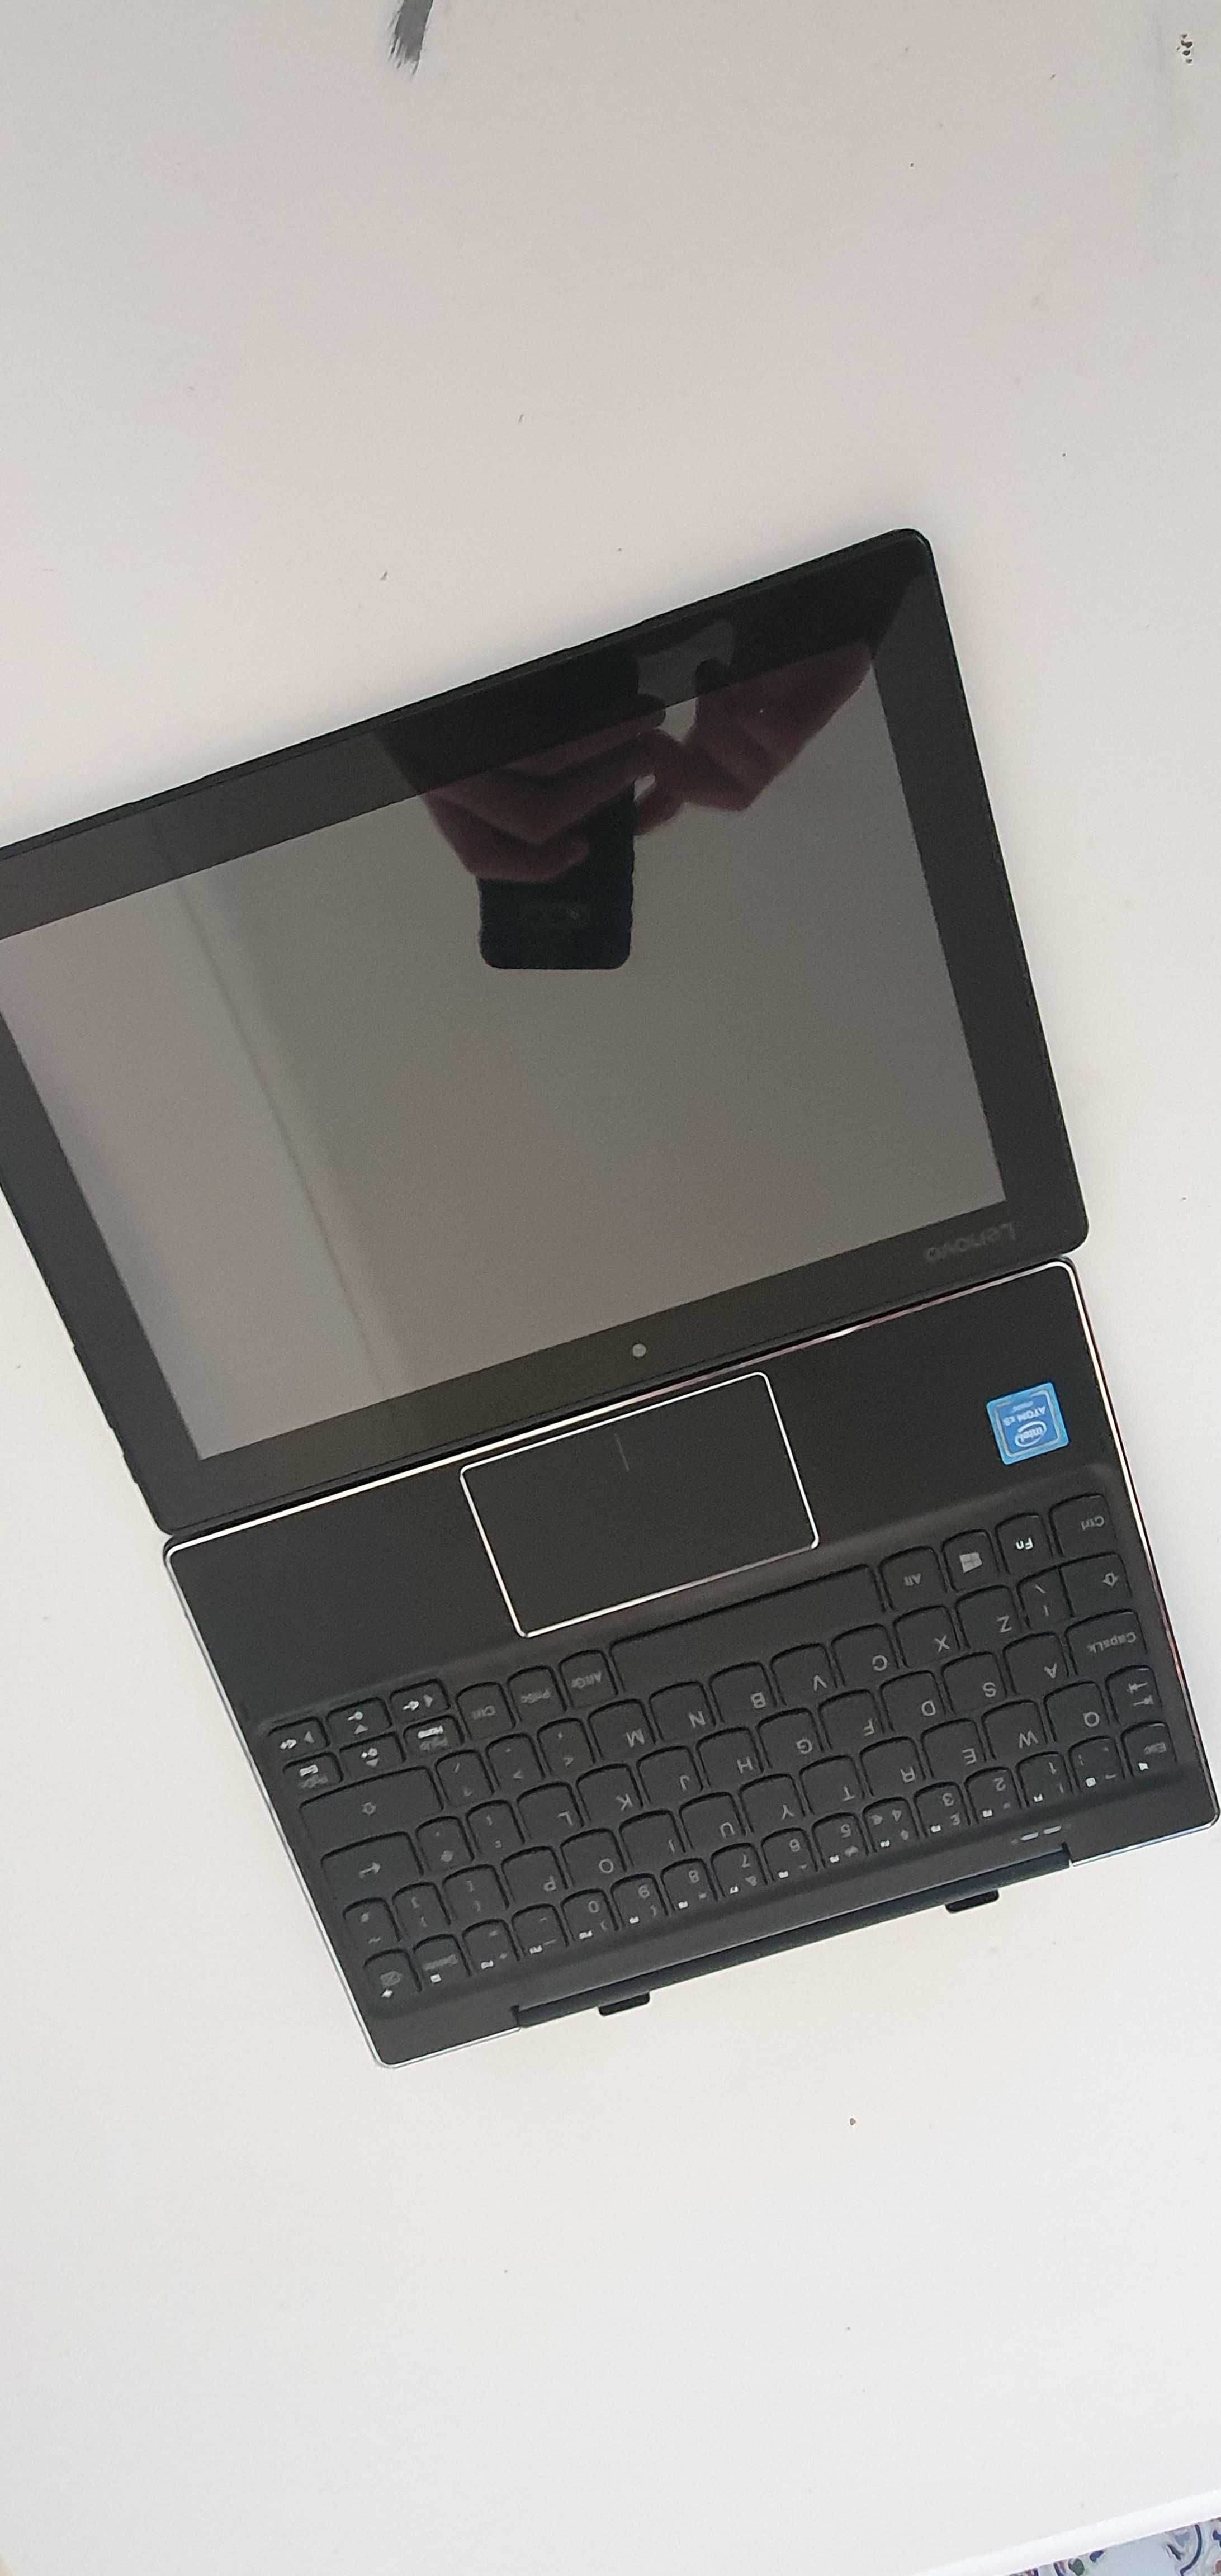 Portatil & tablet Lenovo Miix 310 (ler descri.)